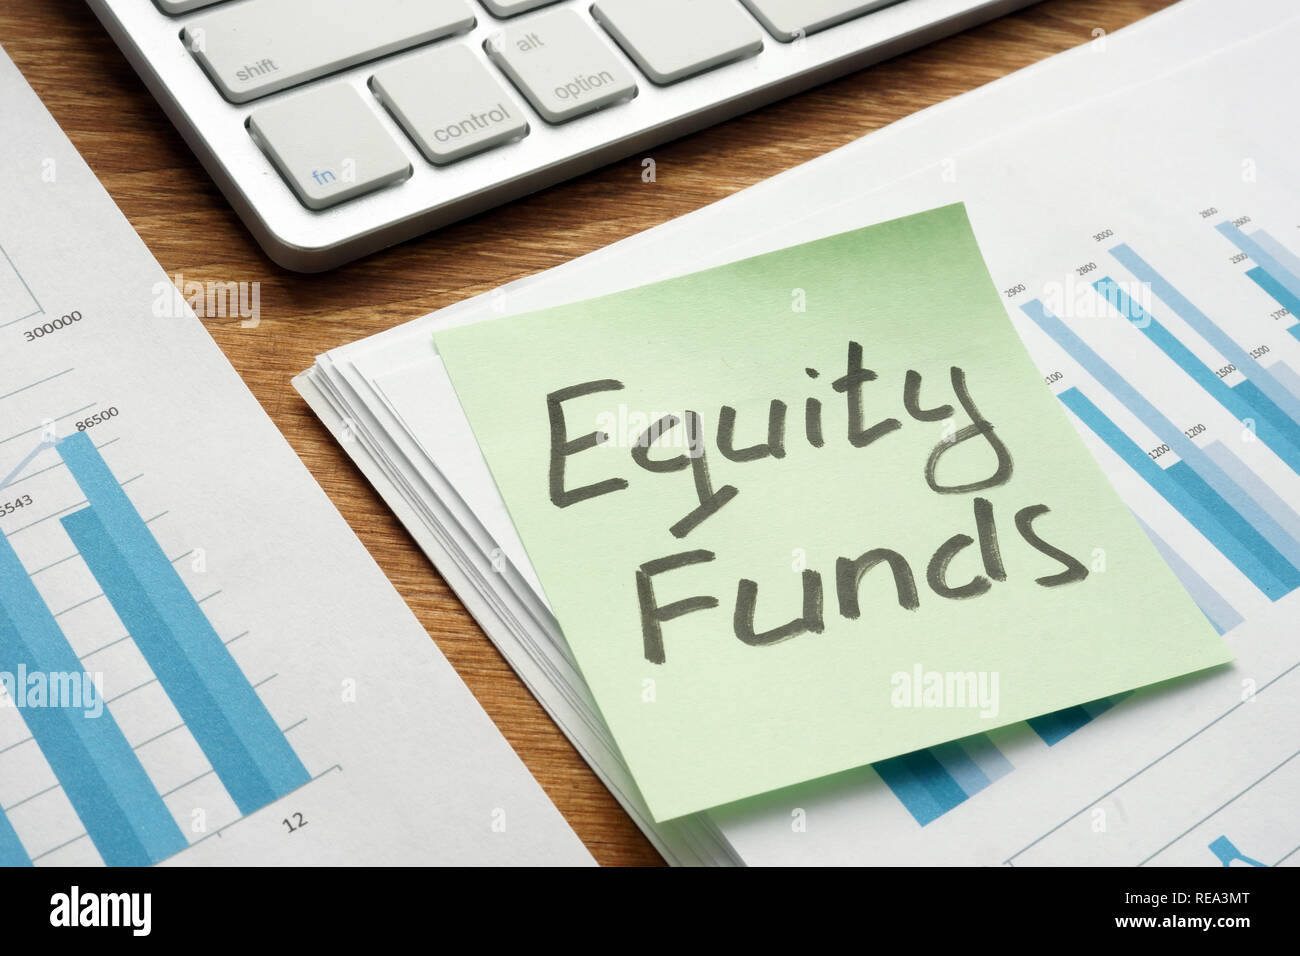 Gegenseitige Aktienfonds auf ein Stück Papier geschrieben. Stockfoto